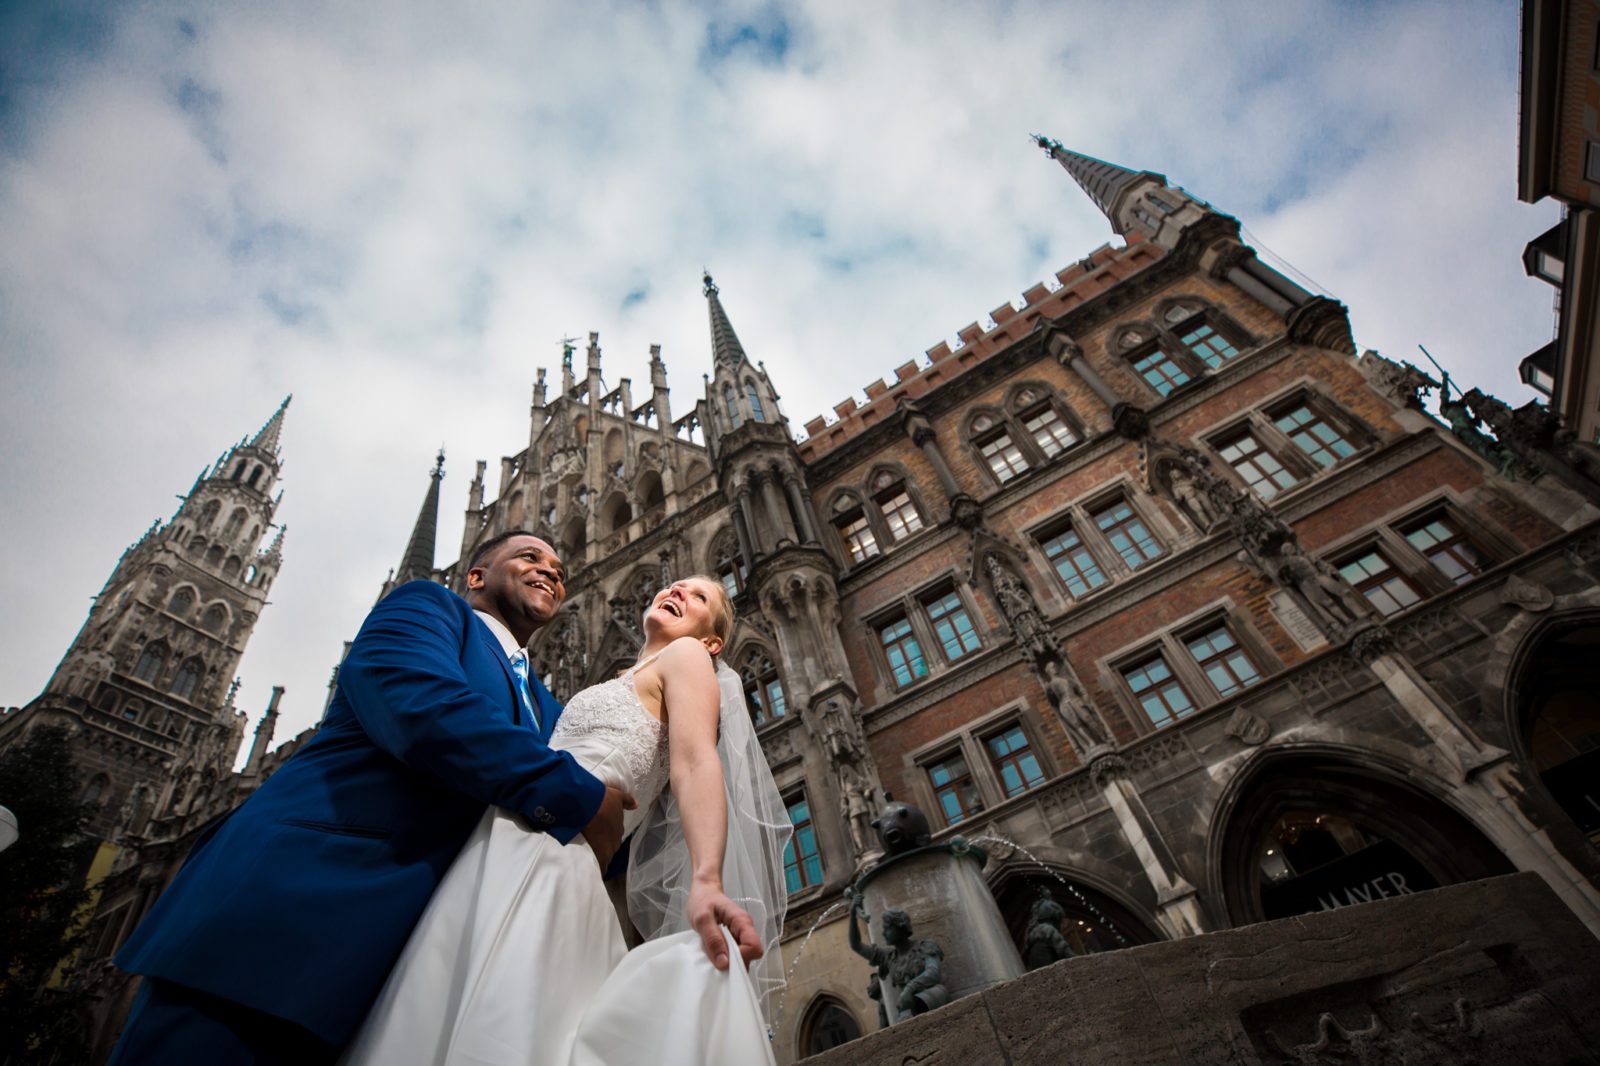 eloping overseas in germany Wedding Alternatives